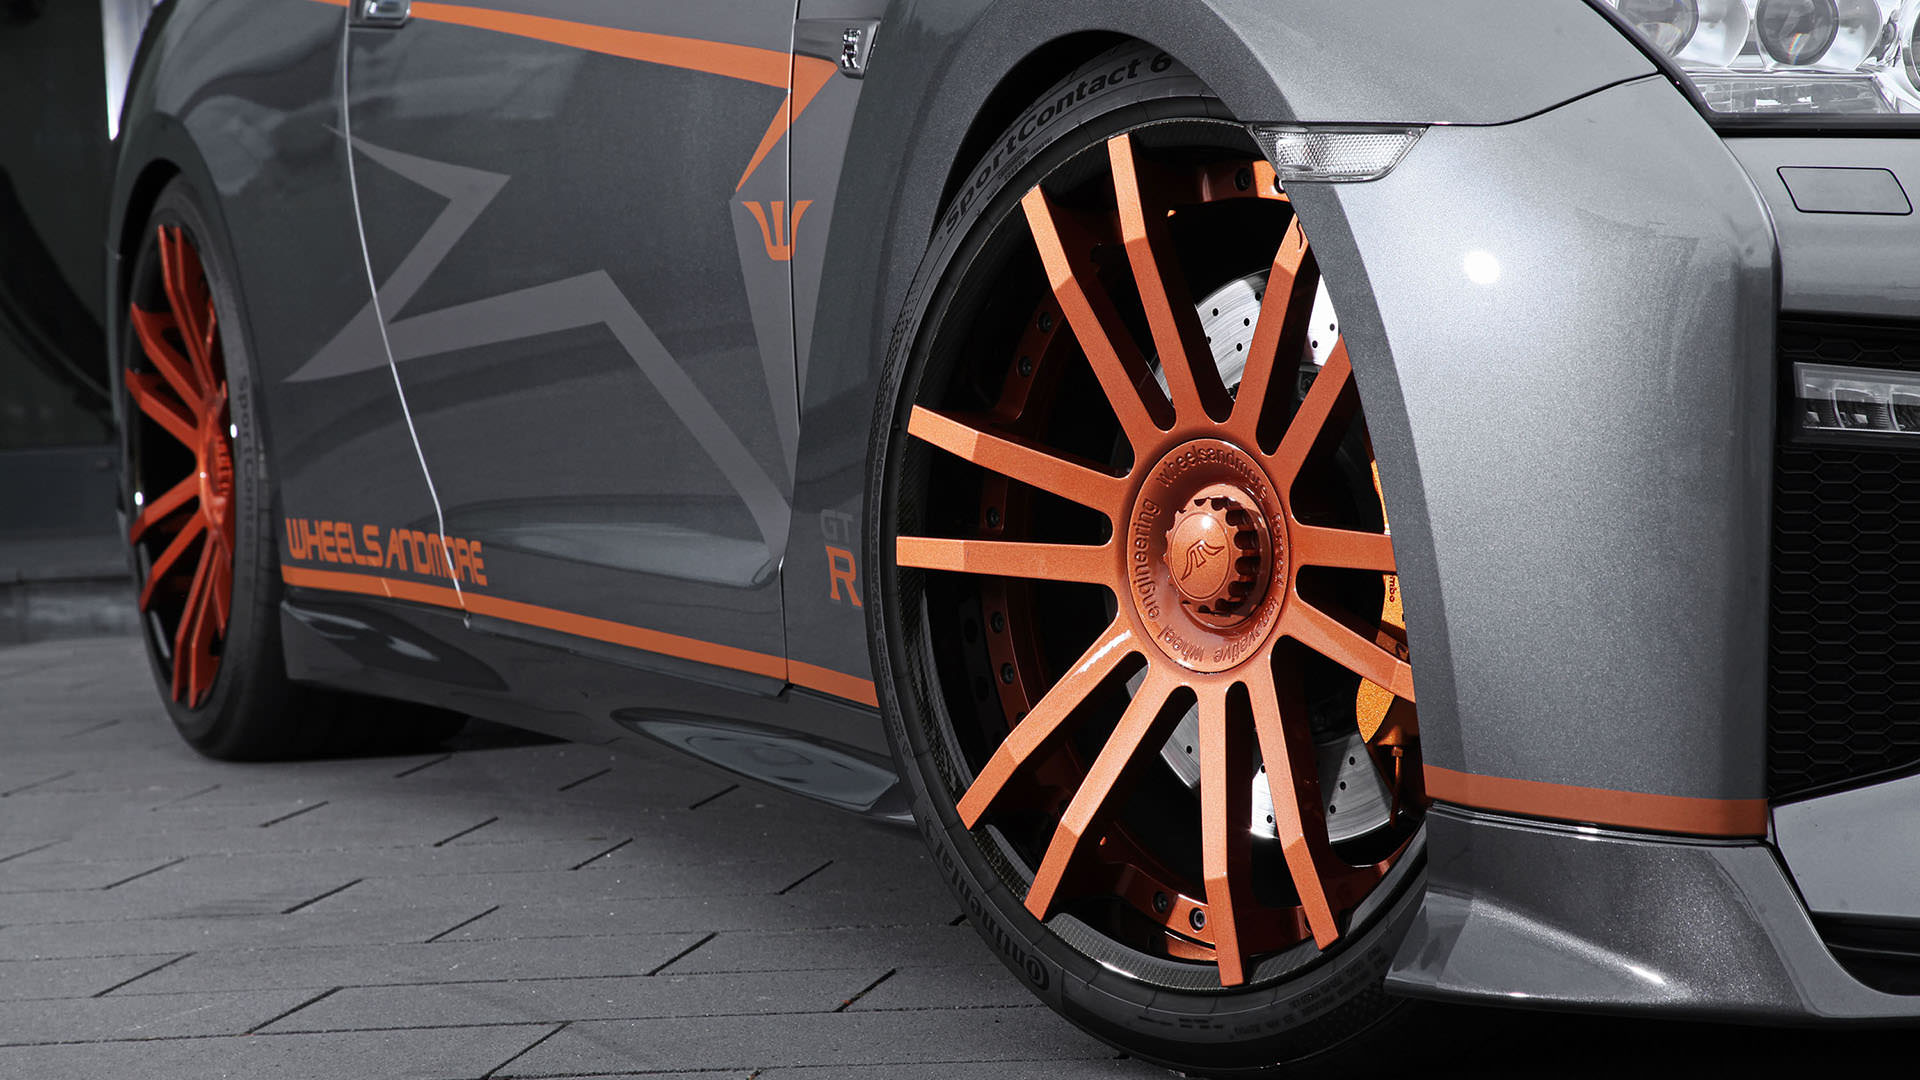 نیسان جی تی آر کرنک زیلا / Nissan GT-R تیونینگ ویلزاندمور / Nissan GT-R Tuning Project „CrankZilla“ by Wheelsandmore خاکستری رنگ